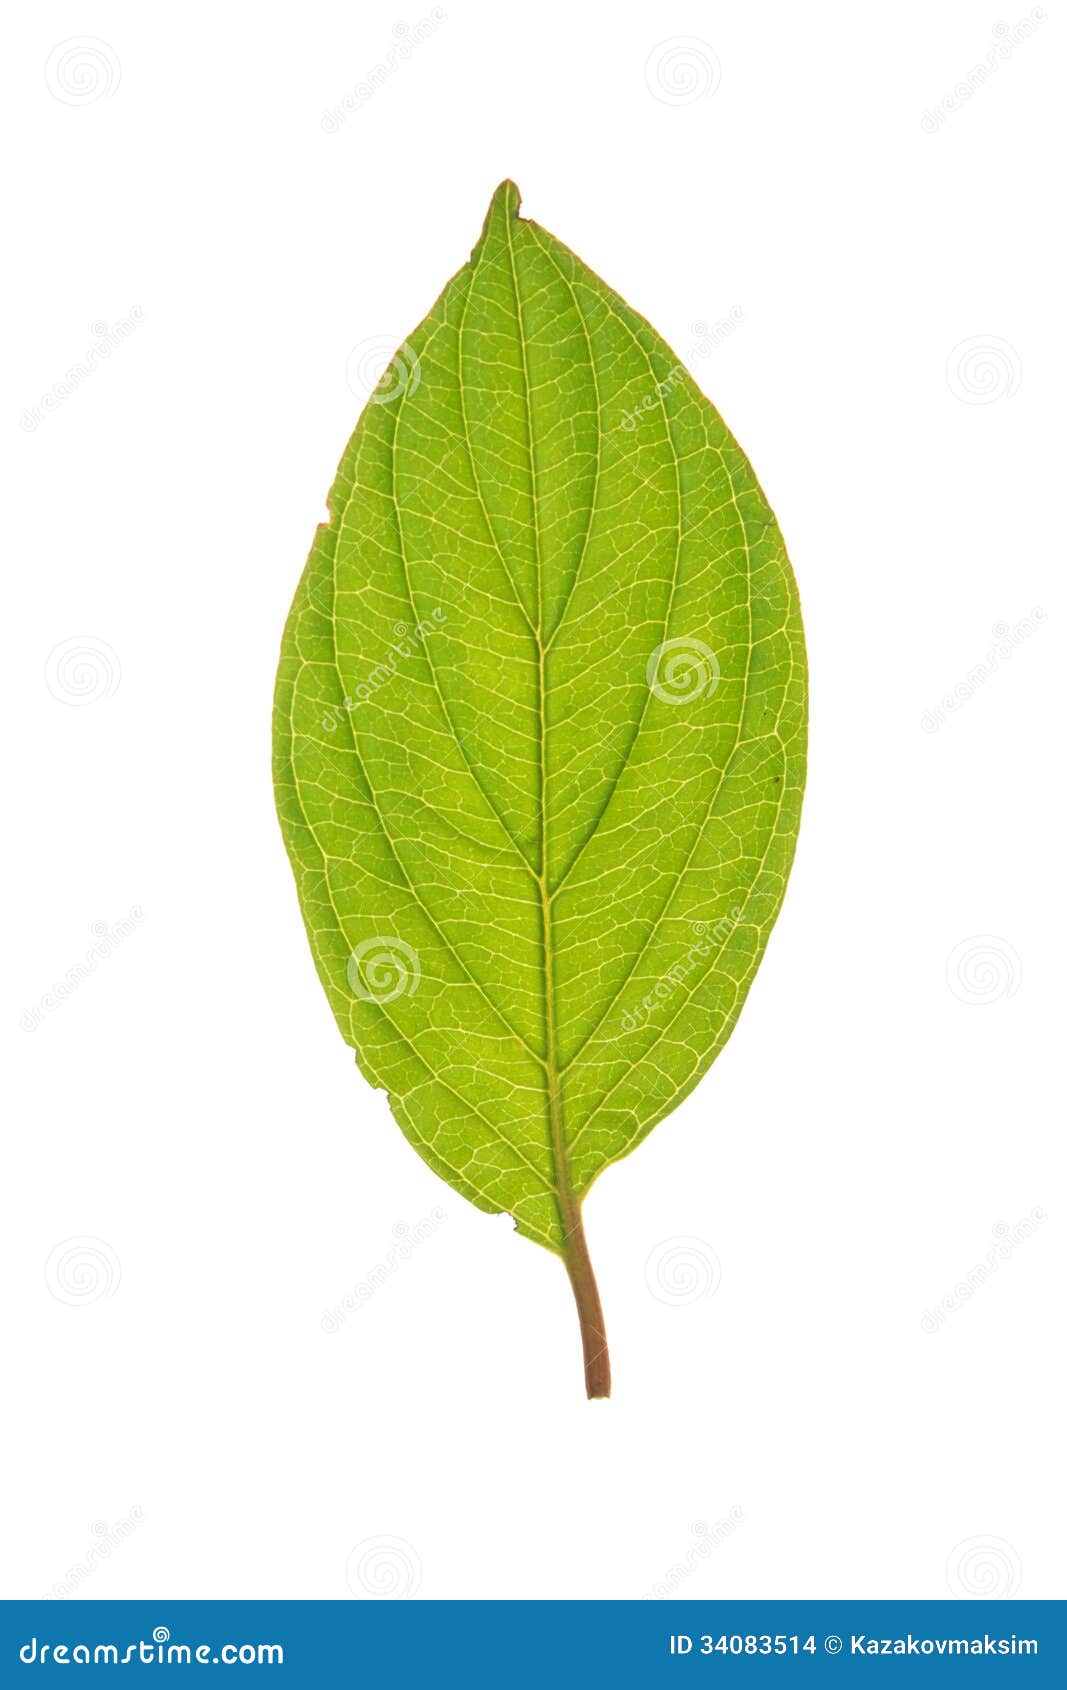 Leaf of Roughleaf Dogwood Isolated on White Stock Photo - Image of ...